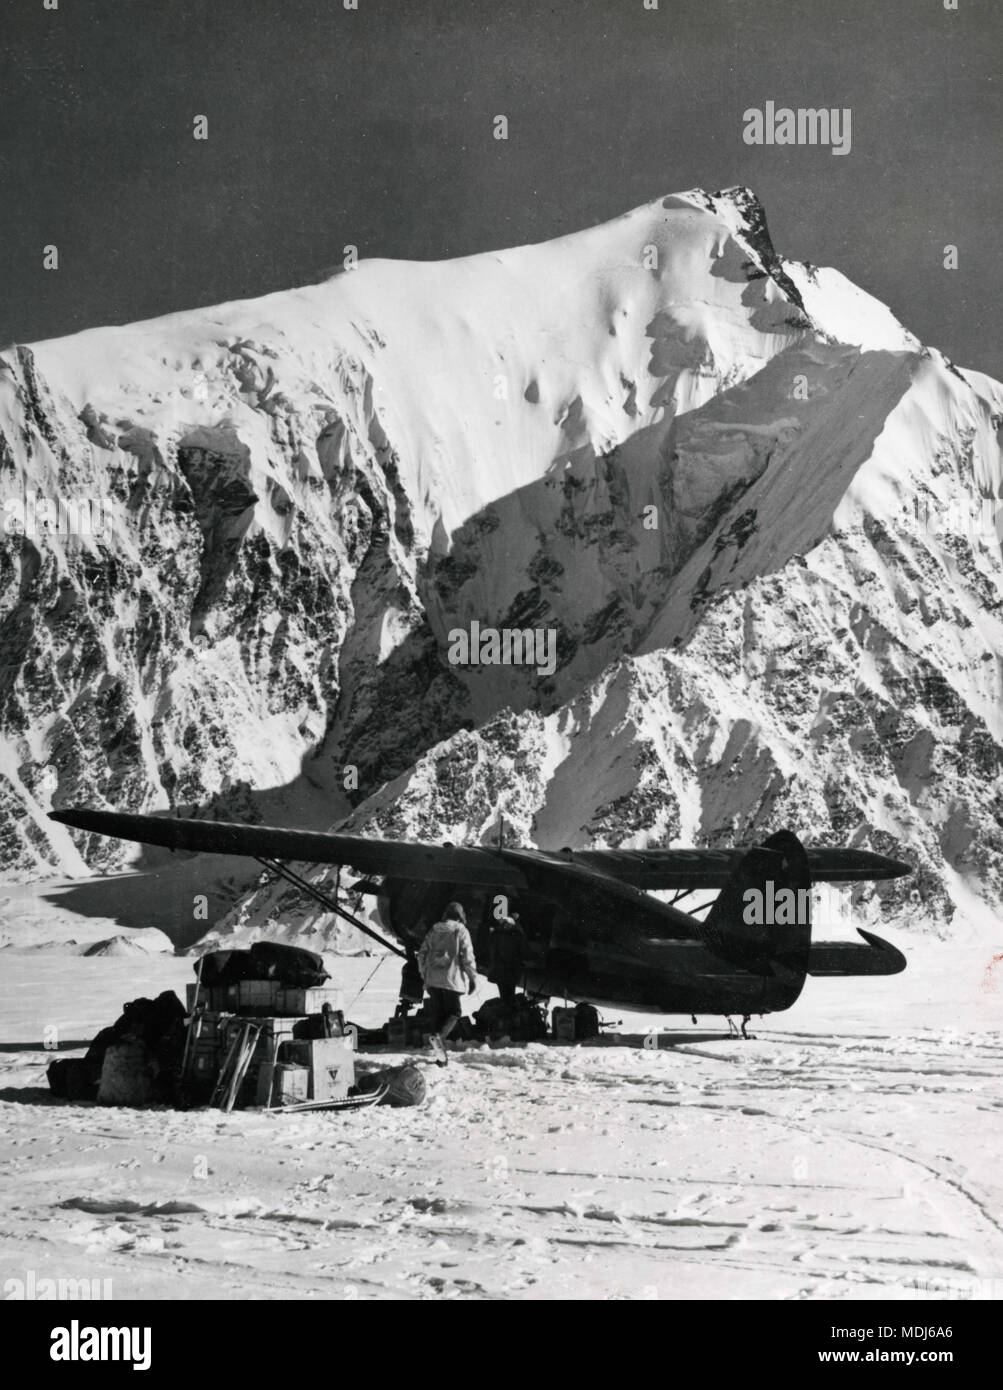 Pequeño avión aterrizó en glaciar Muldrow, montaña McKinley, Alaska, EE.UU. 1950 Foto de stock